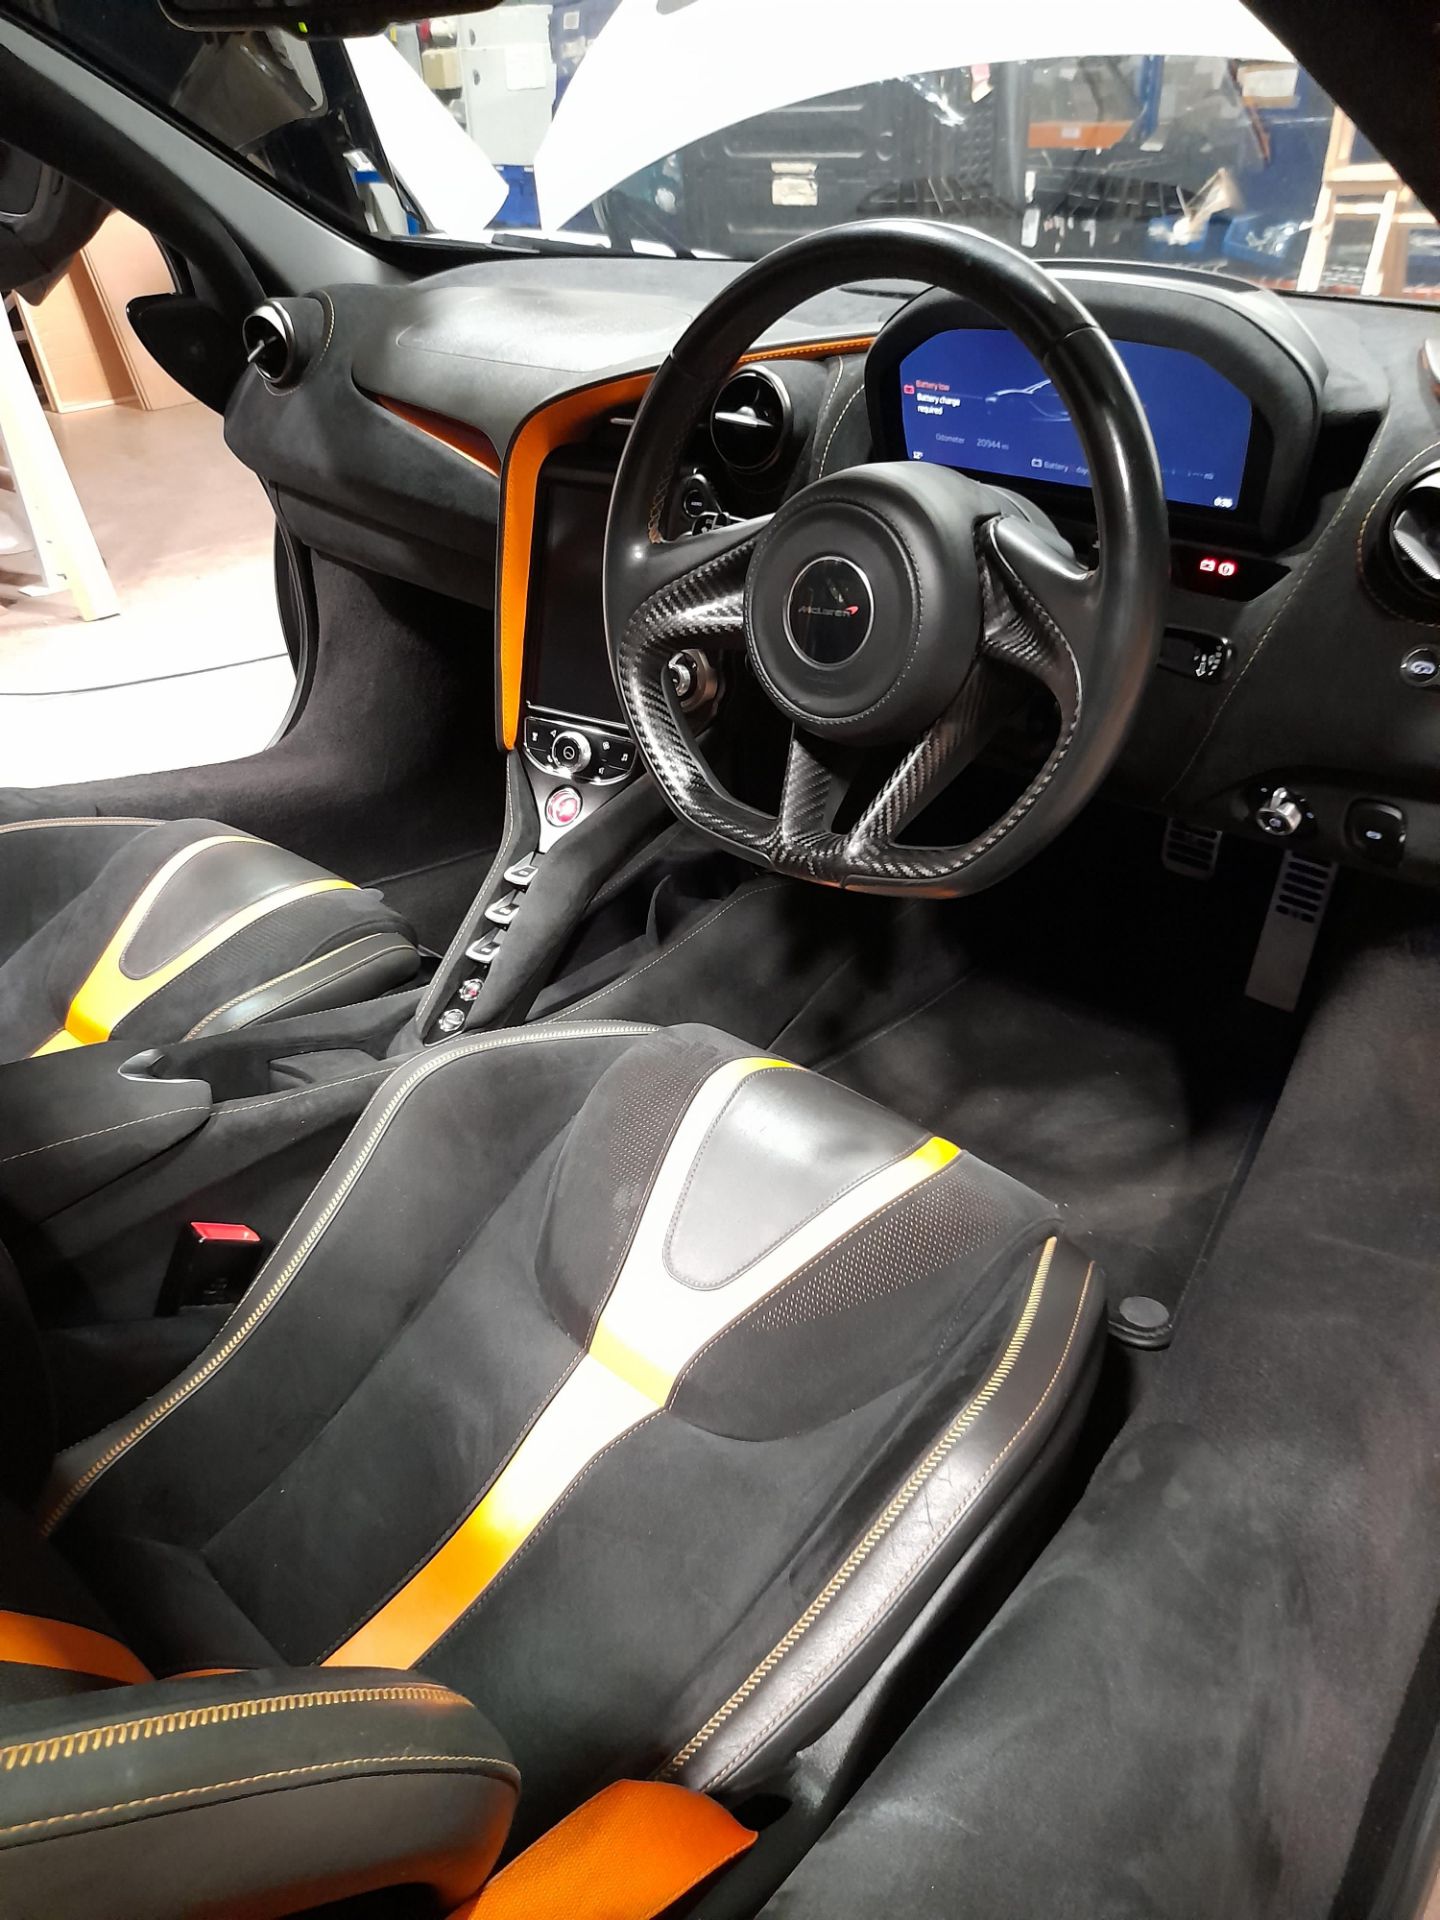 McLaren 720 Coupe 4.0 V8 petrol, Registration: S1 - Image 33 of 37